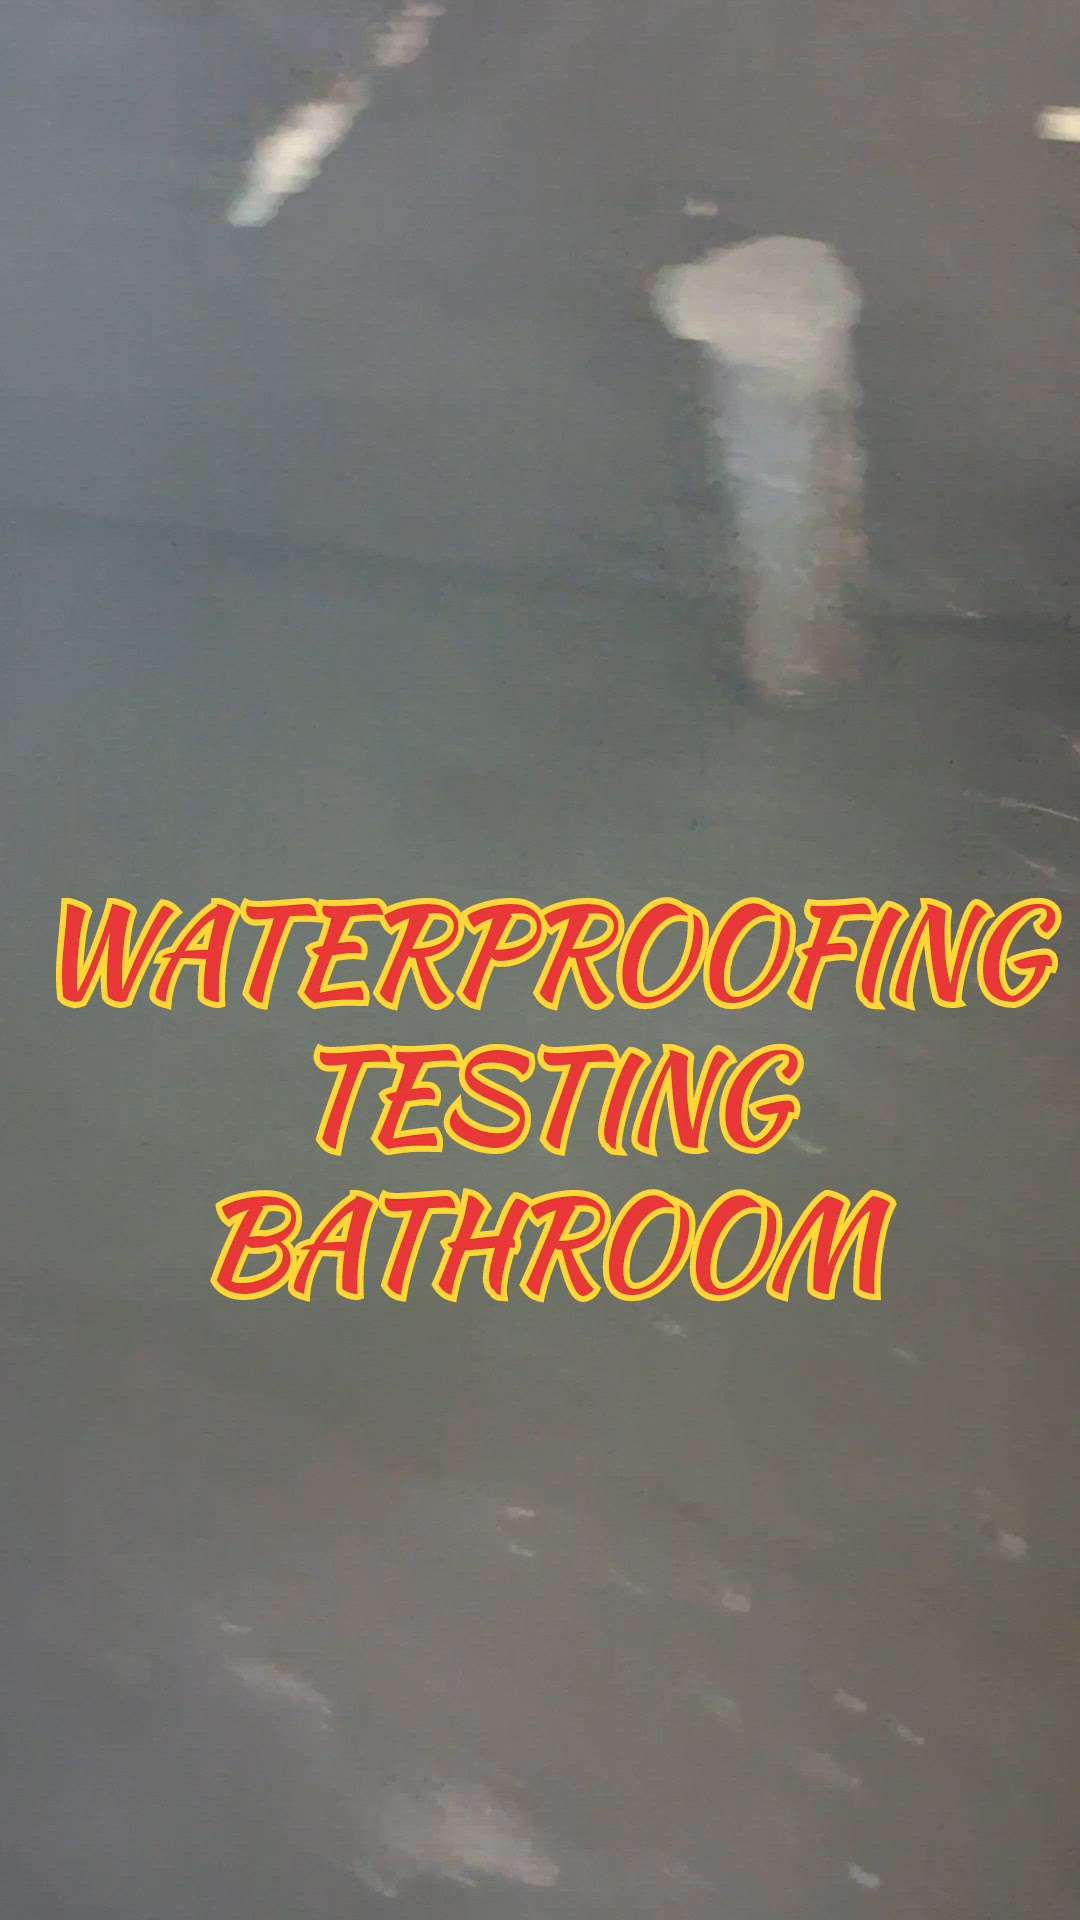 #Waterproofing #Testing